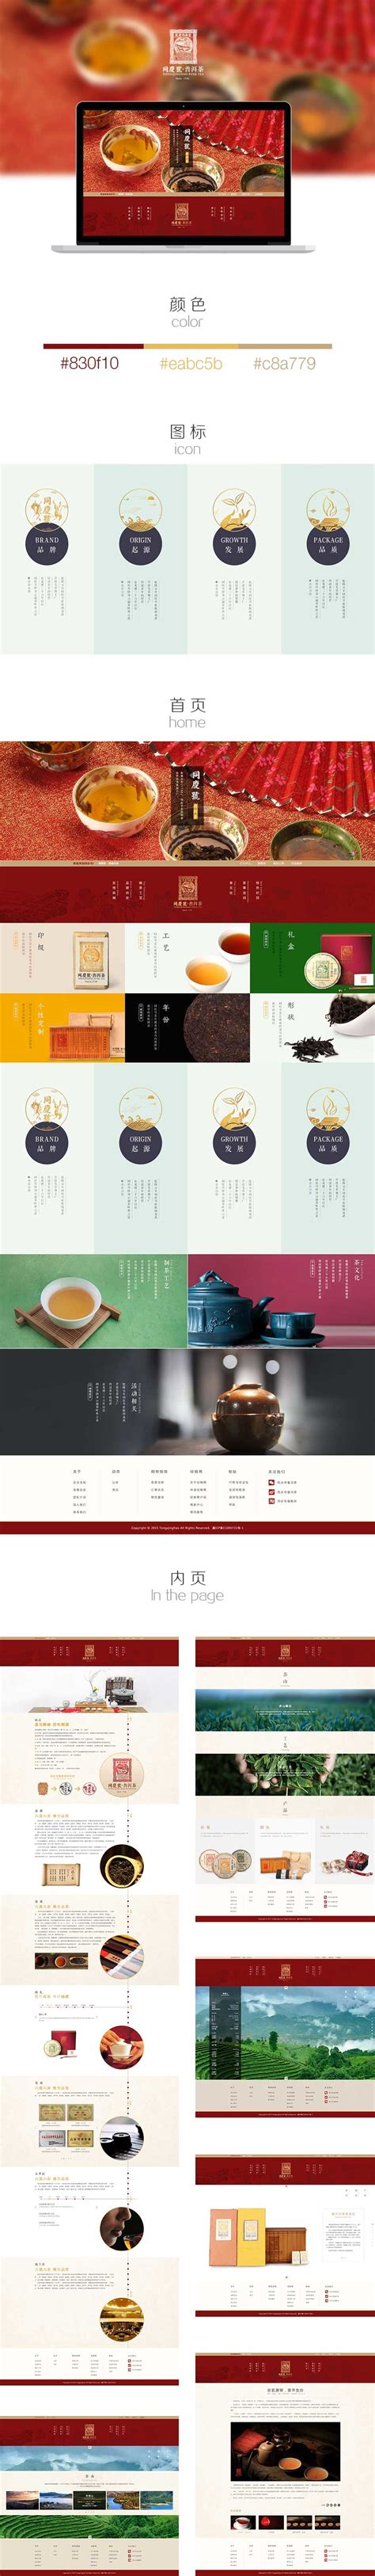 10款茶叶网站设计欣赏-海淘科技